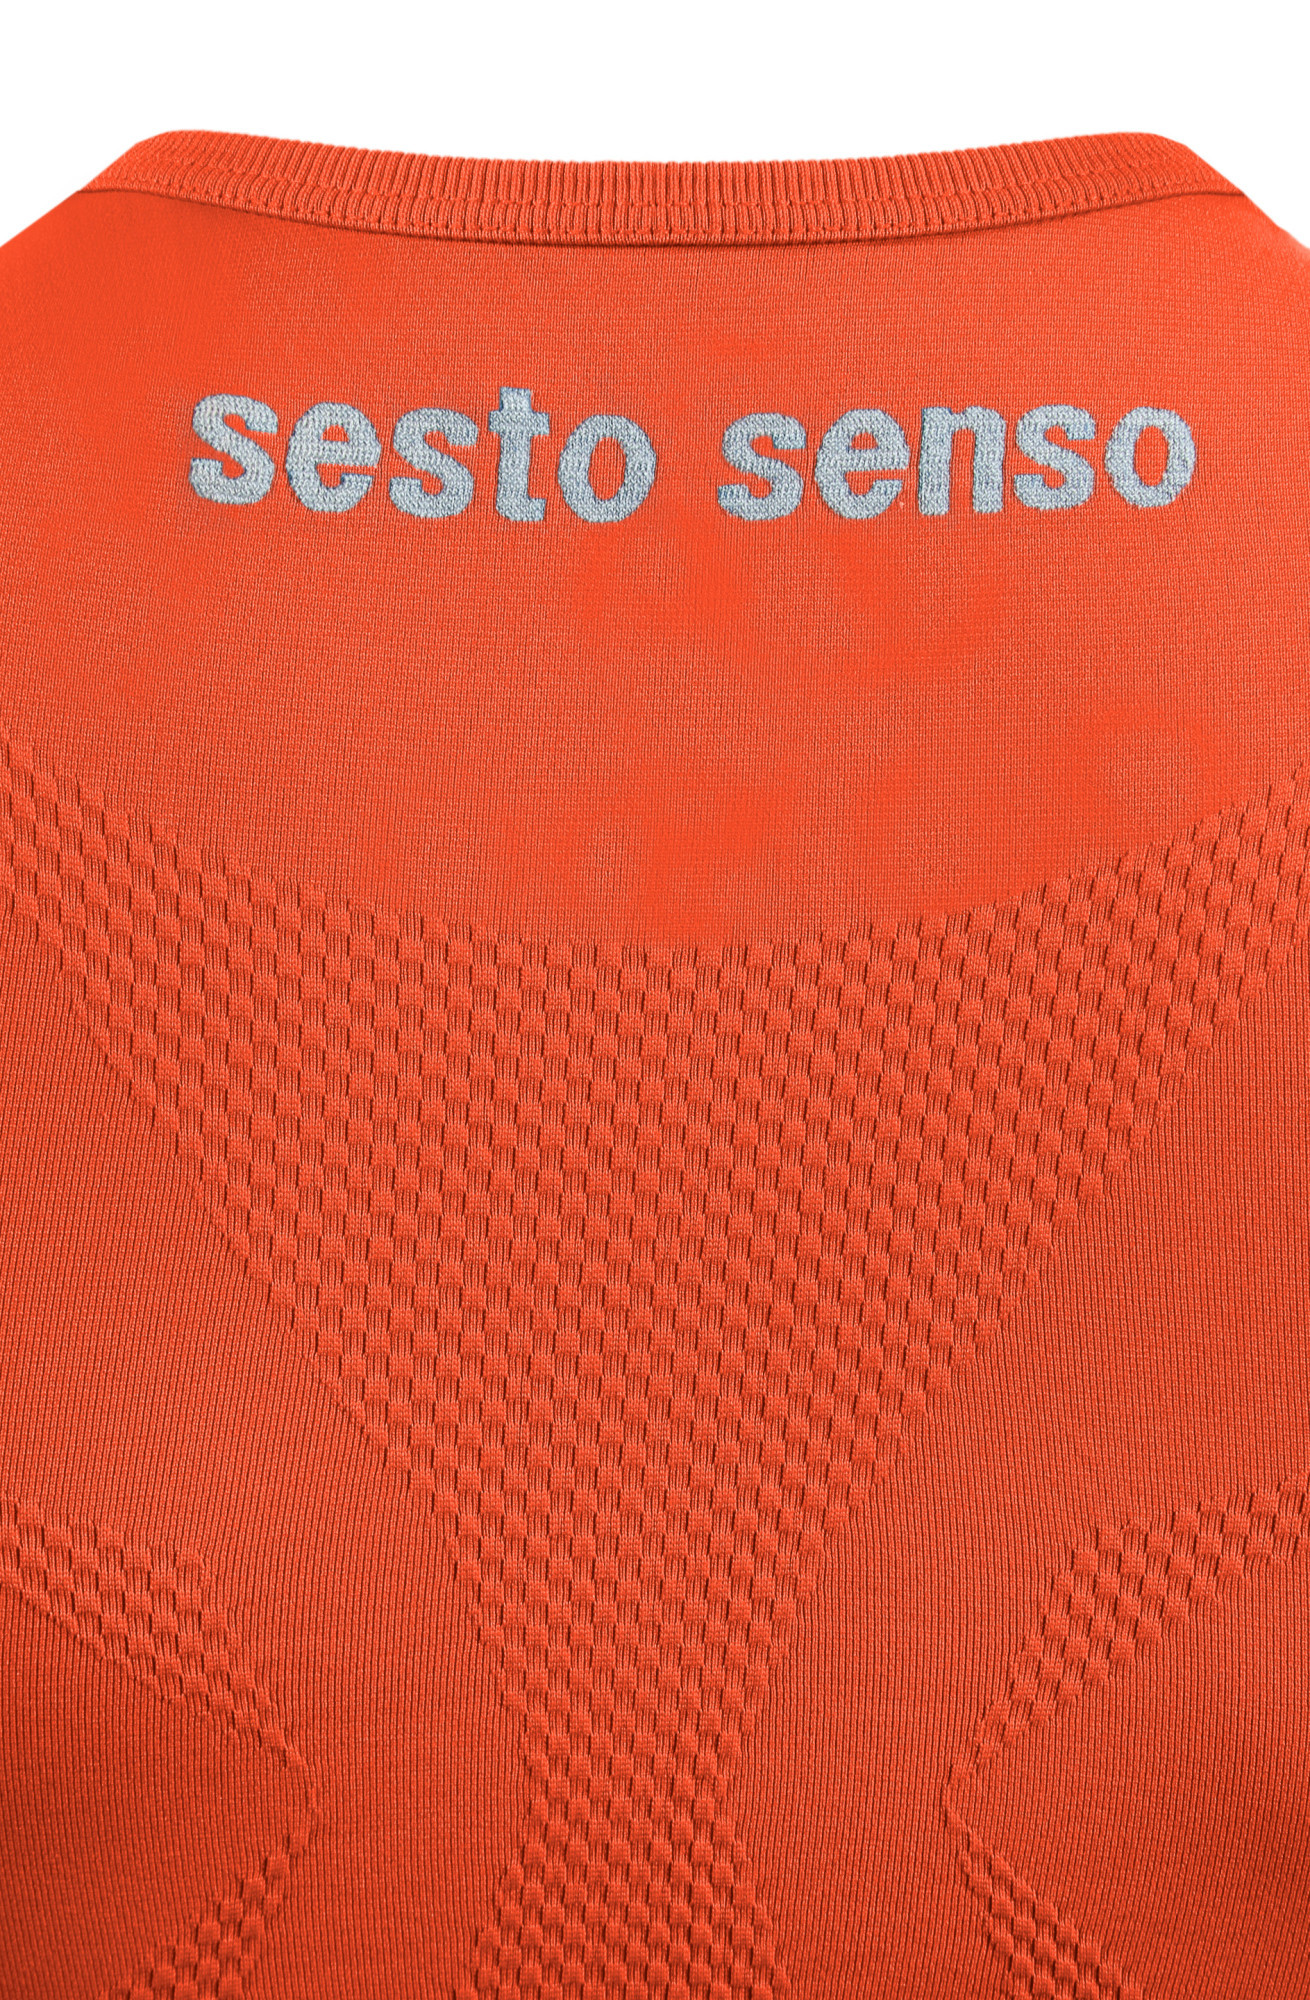 Sesto Senso Thermo Tílko CL38 Orange Velikost: L/XL